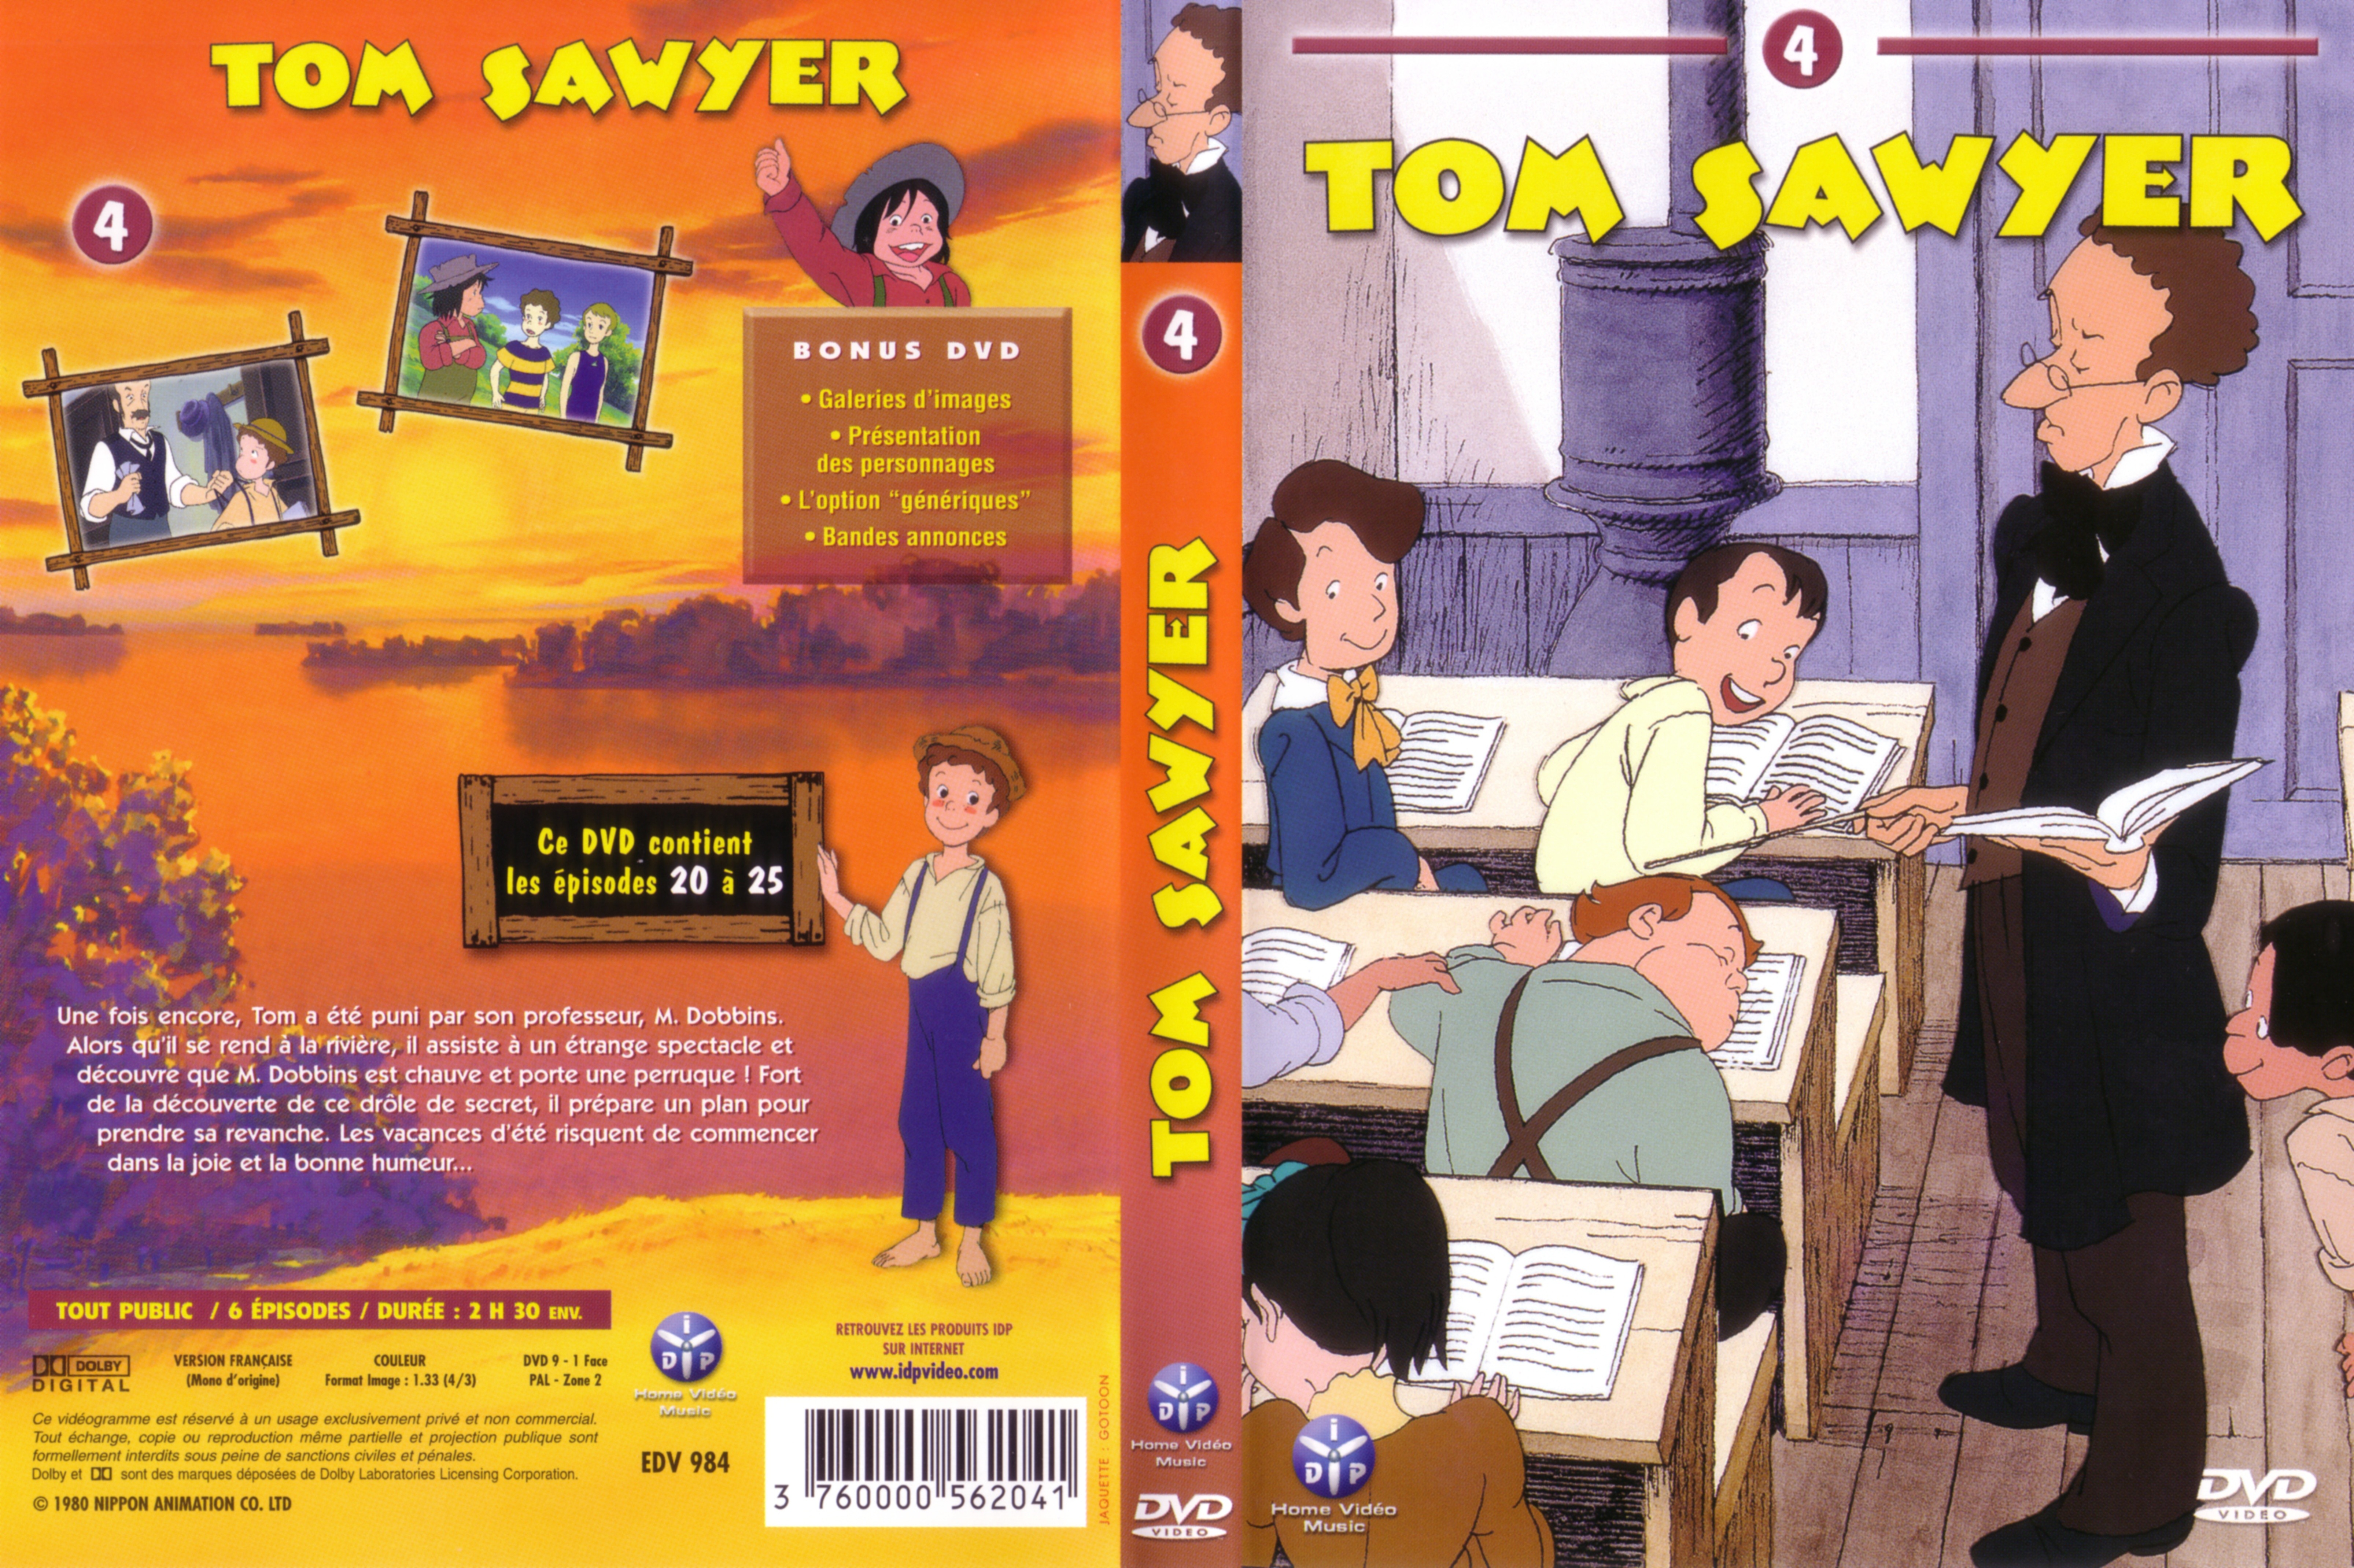 Jaquette DVD Tom Sawyer vol 4 v2